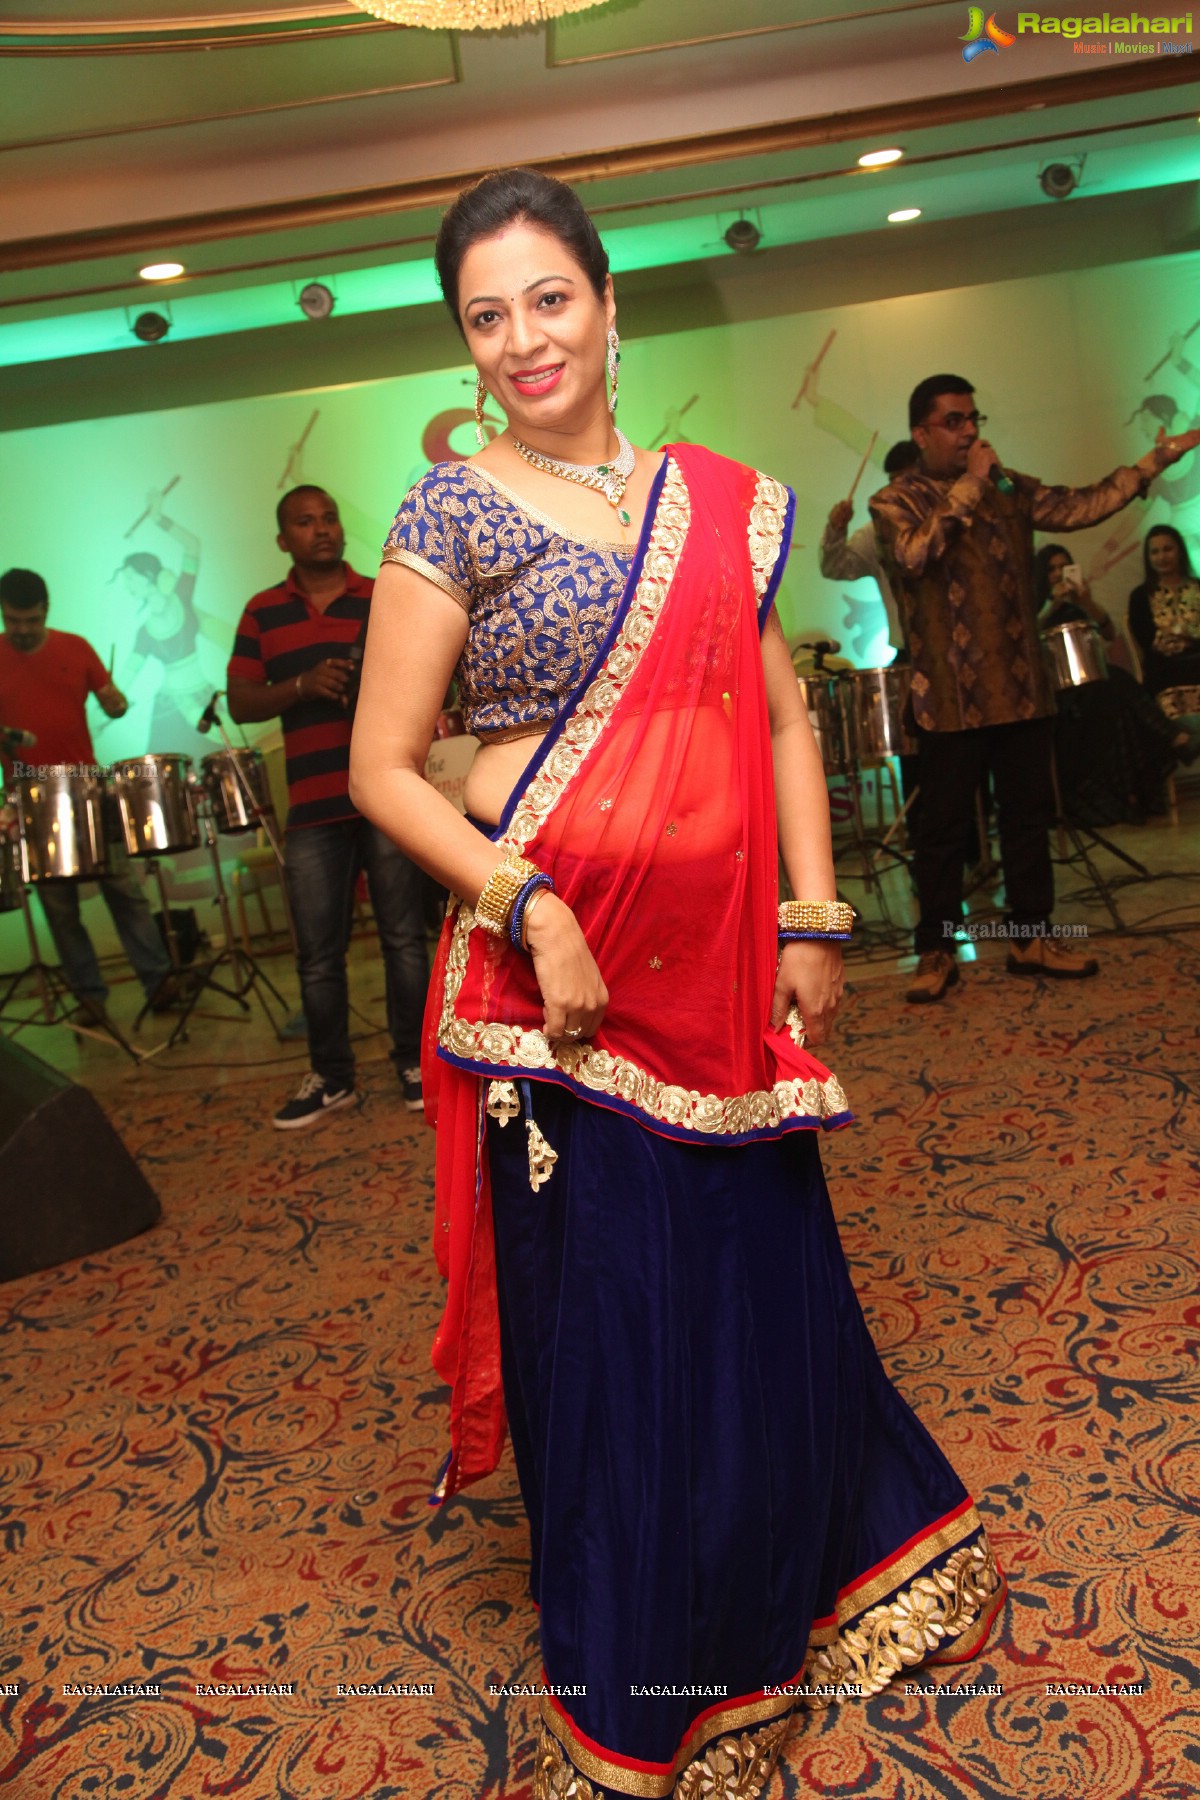 BWB Dandia Dhamaka 2015 at A'La Liberty, Hyderabad